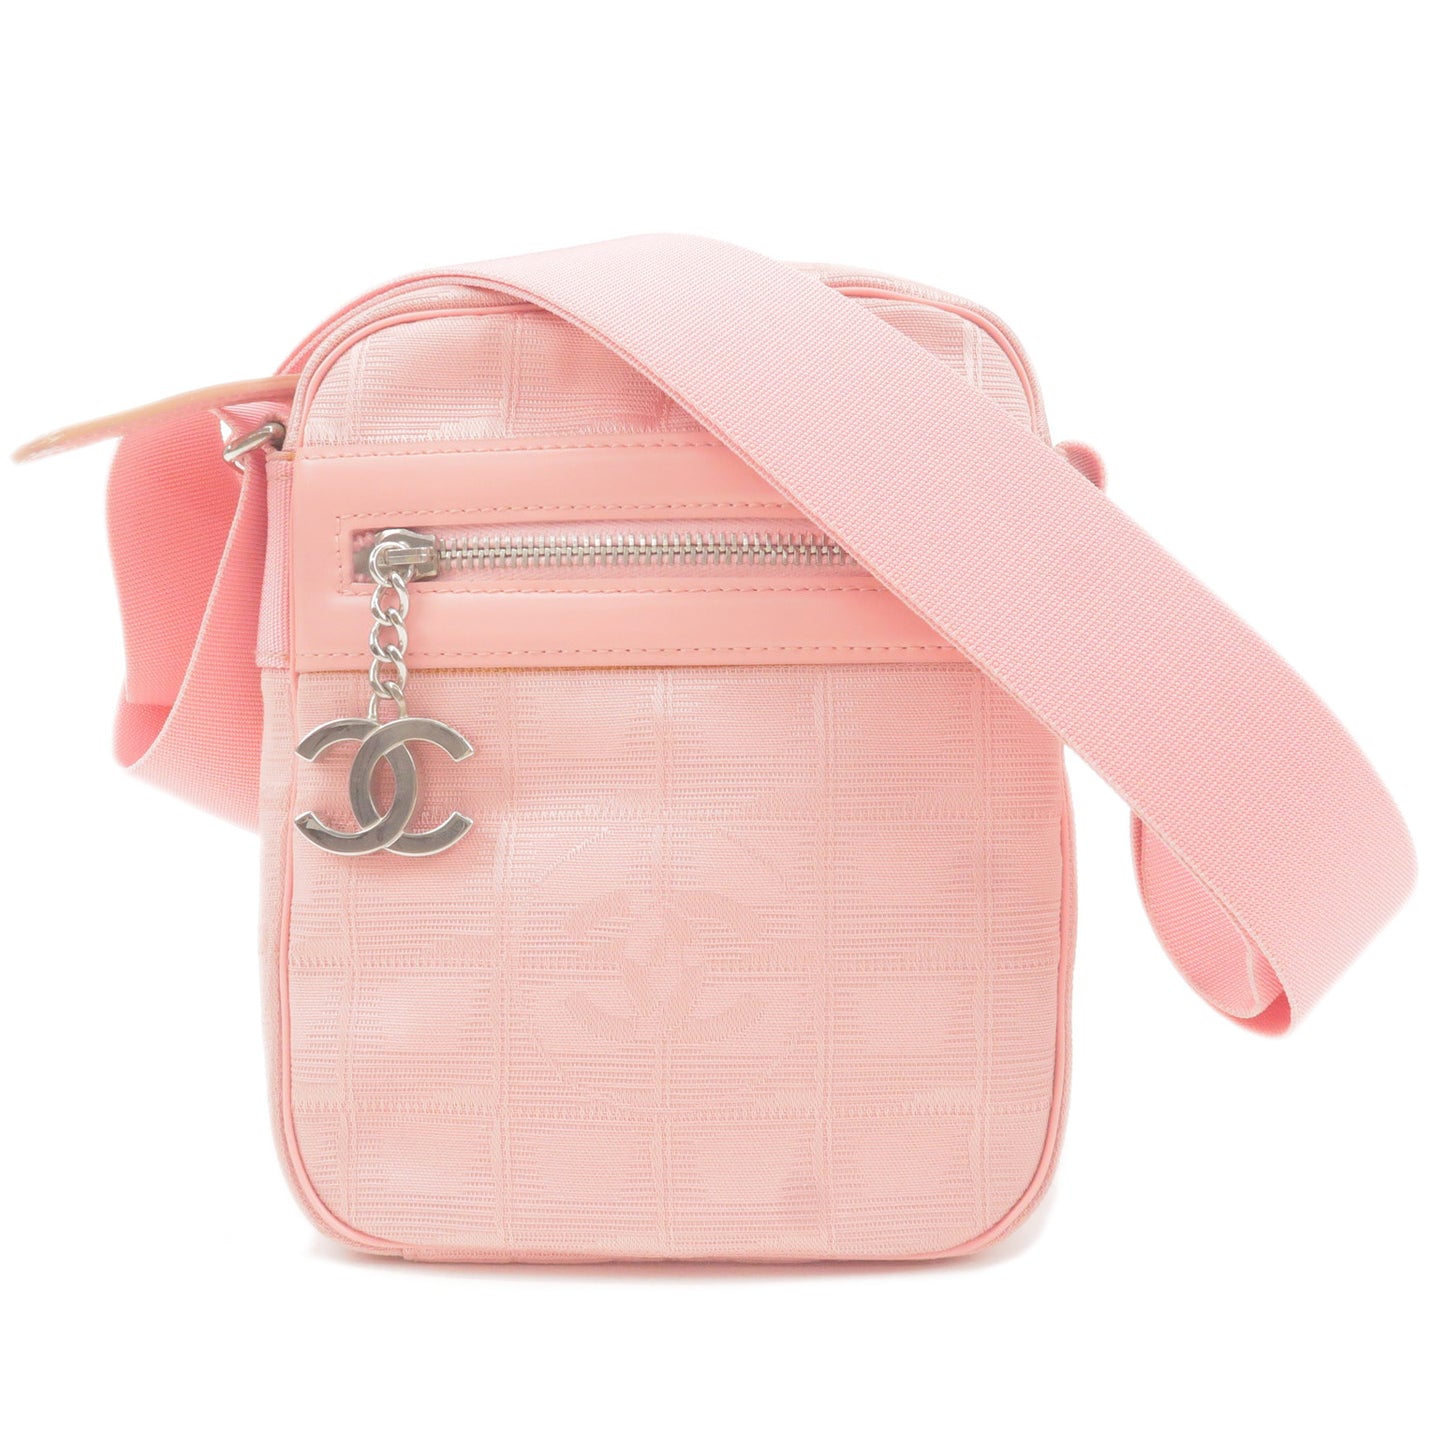 CHANEL-Travel-Line-Nylon-Jacquard-Leather-Shoulder-bag-Pink-A30913